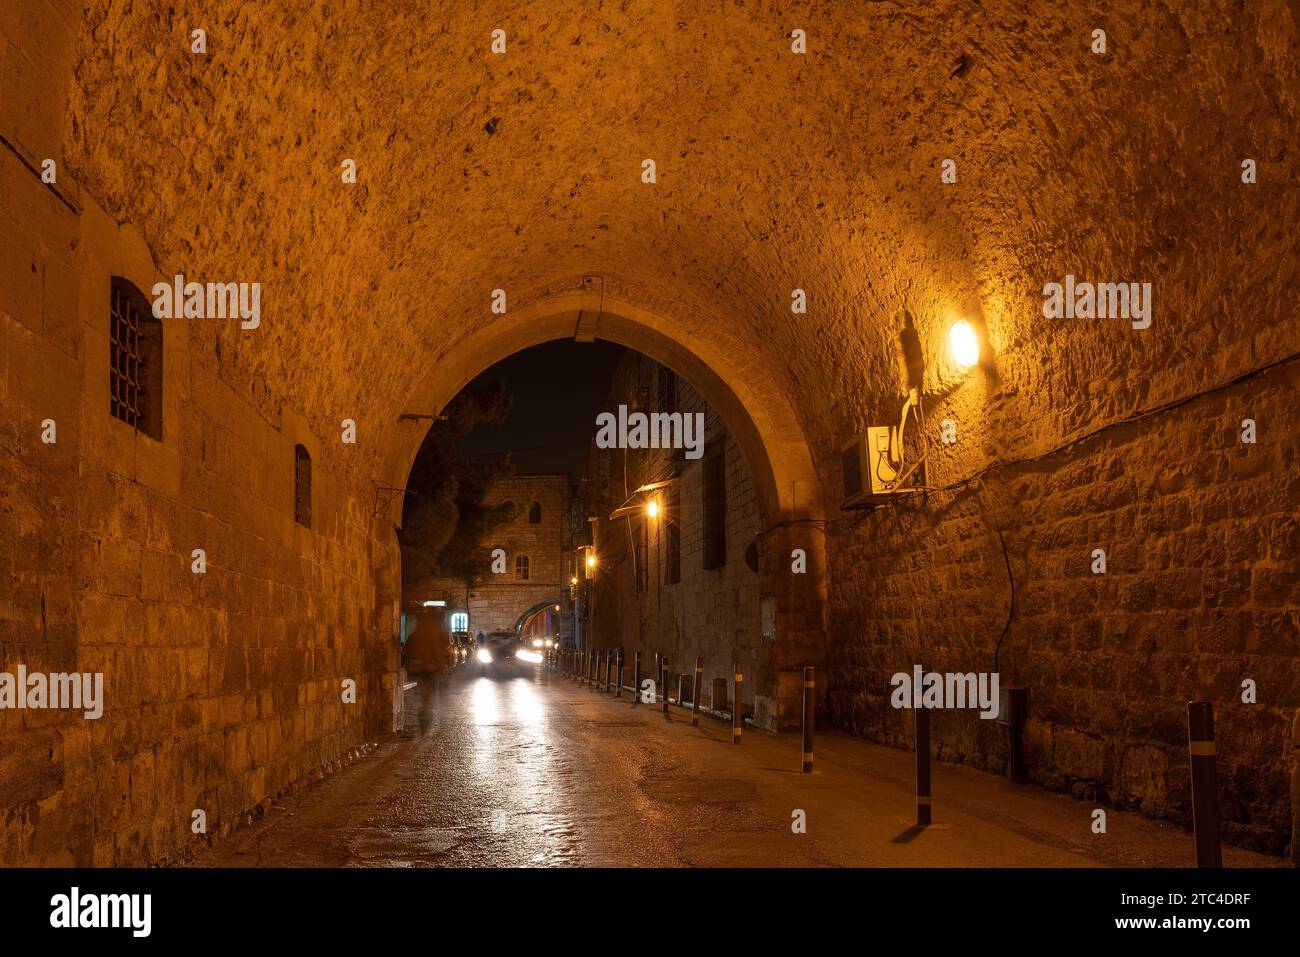 Calle de la noche en la ciudad vieja de Jerusalén, Israel. Foto de stock